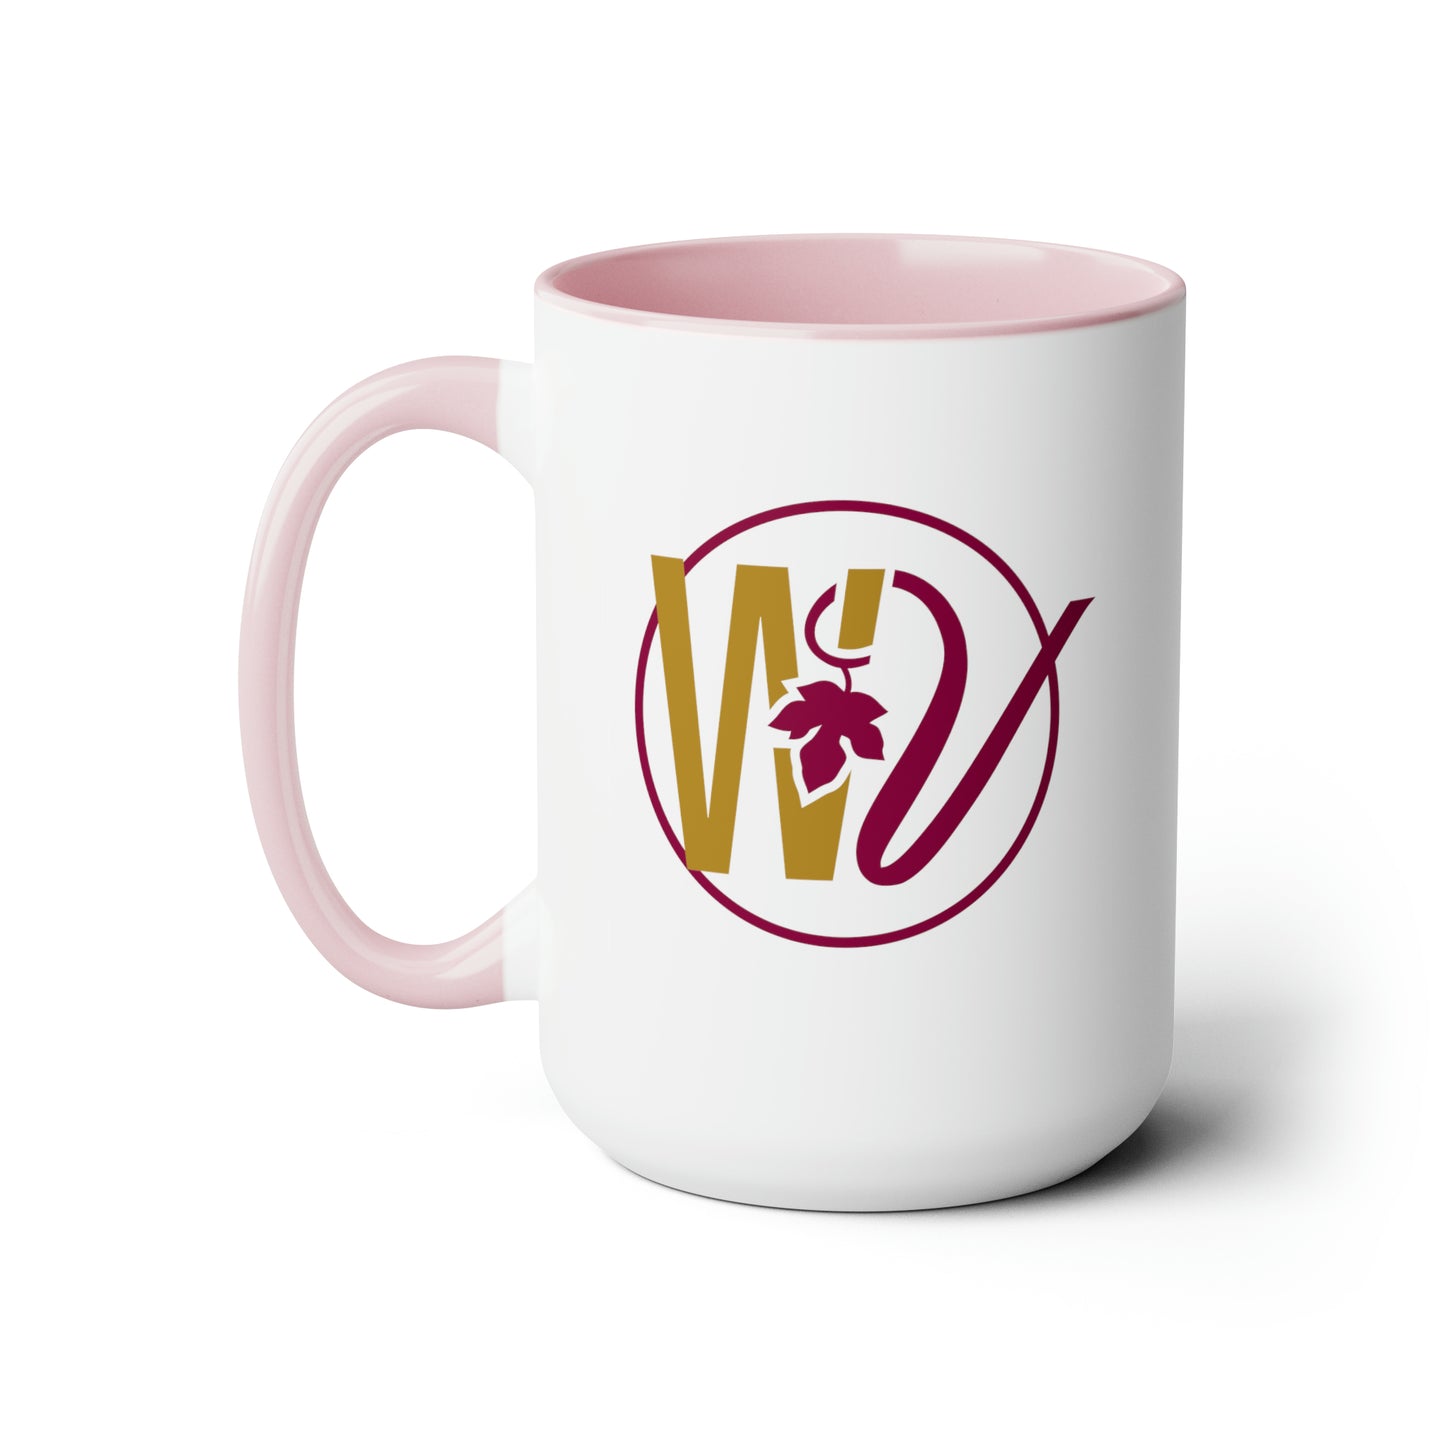 Whiskey & Vine Two-Tone Coffee Mugs, 15oz